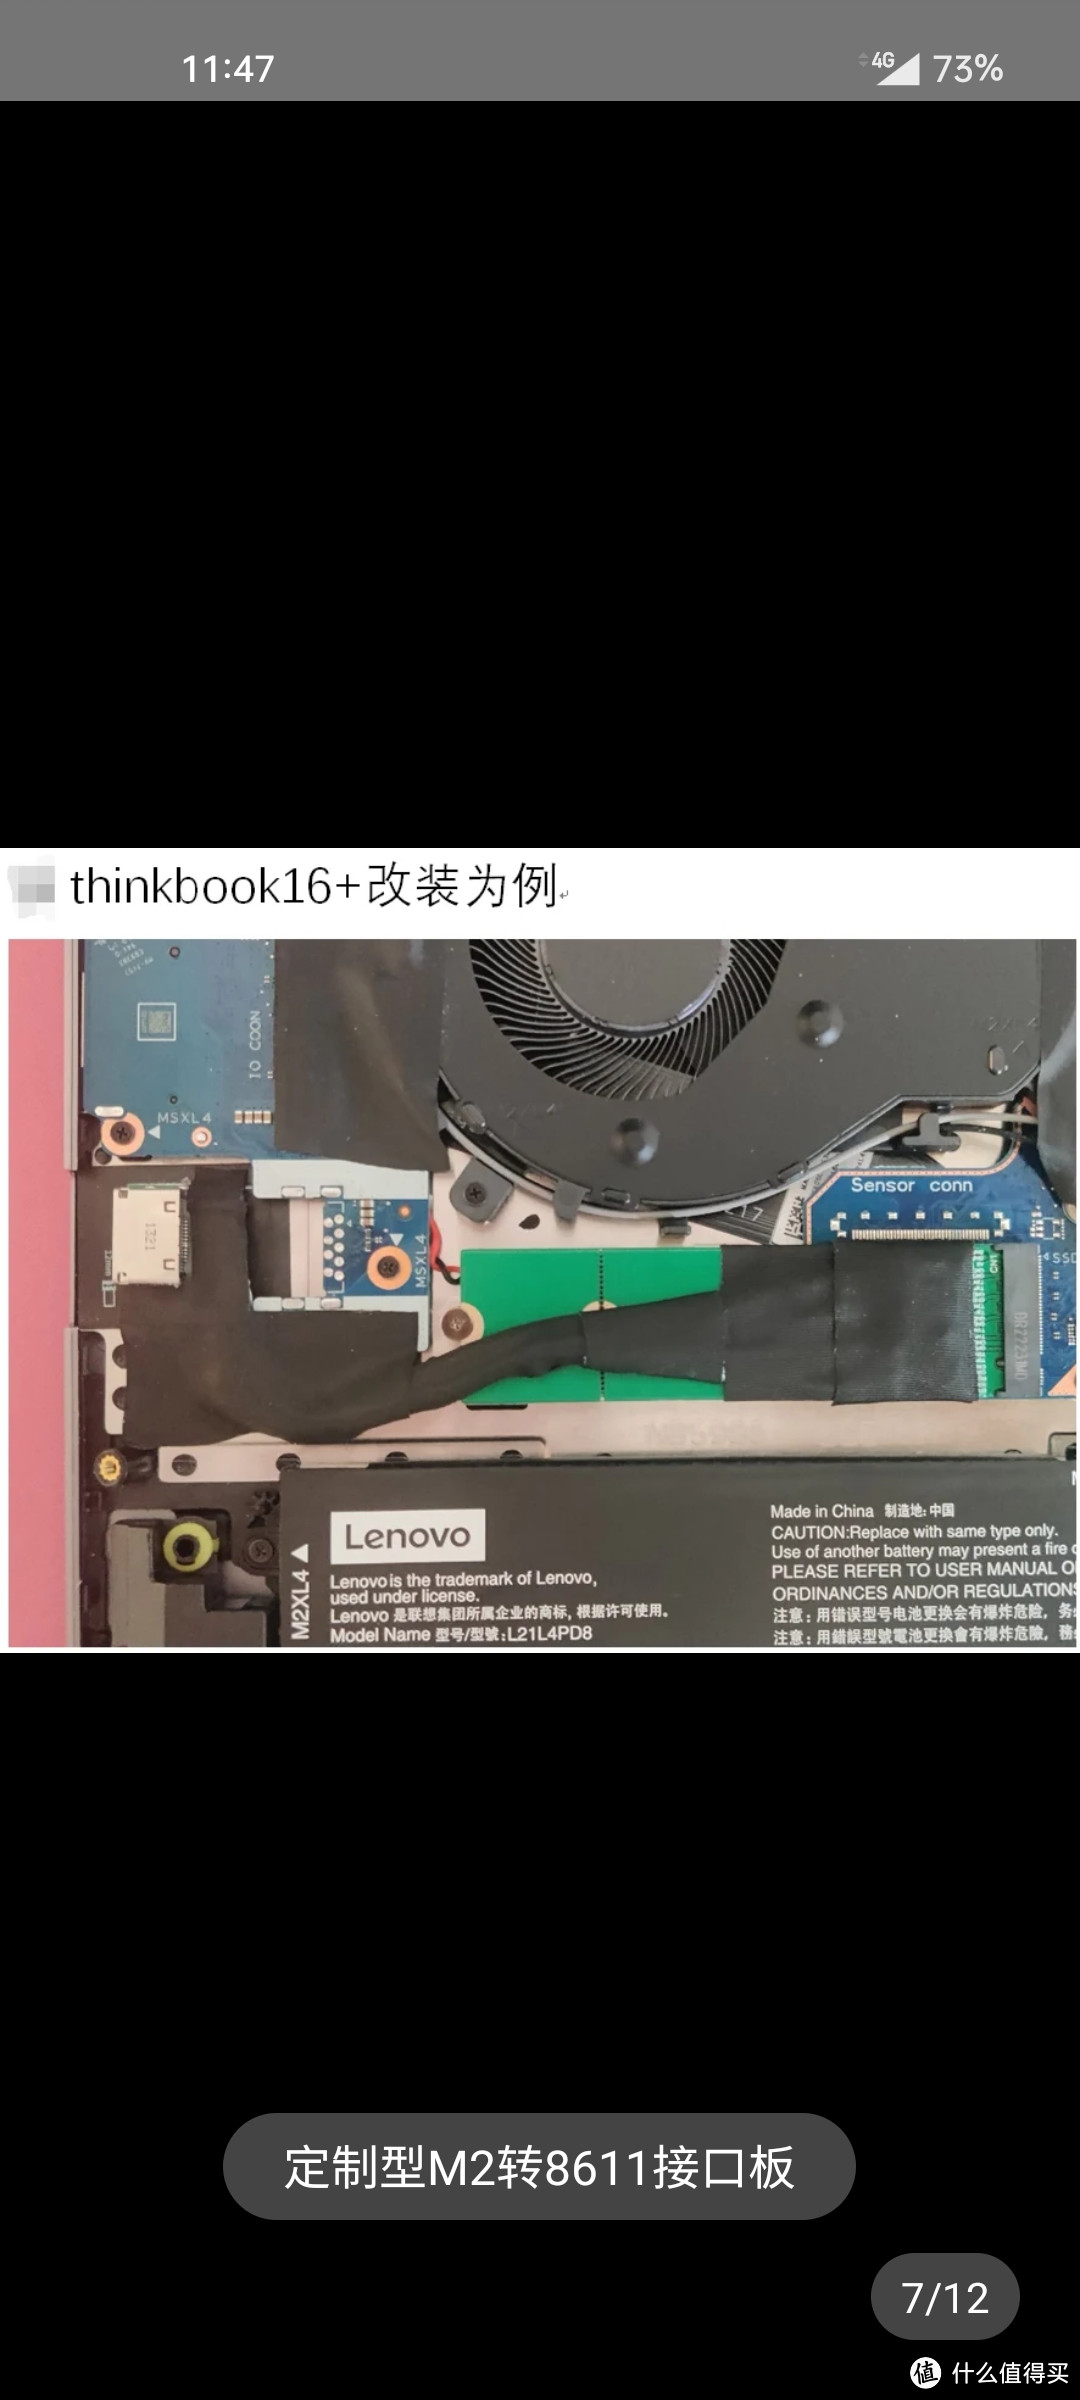 逆天了，Thinkbook14/16+ 600元就可加装外接显卡坞，全能本挑翻一众游戏本。